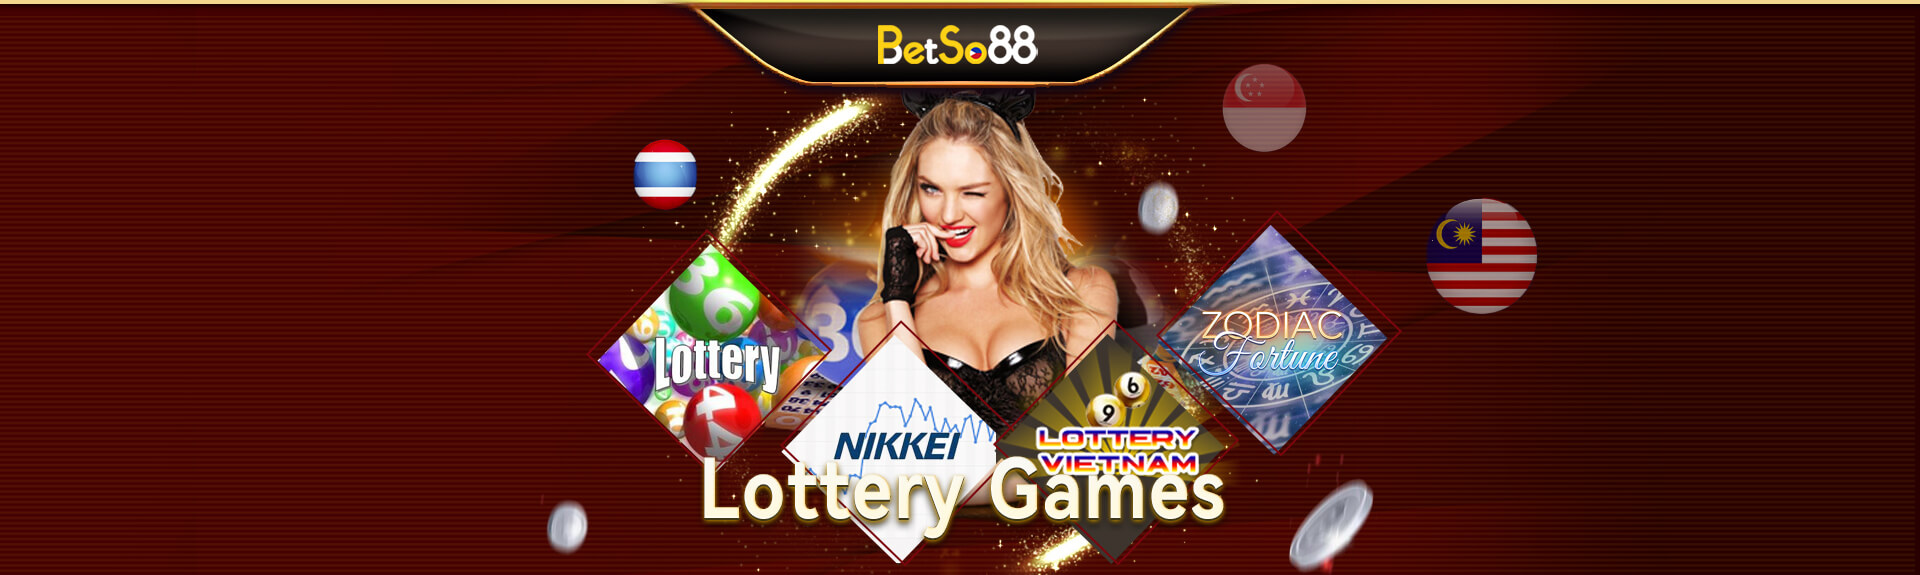 betso88 - Lottery 